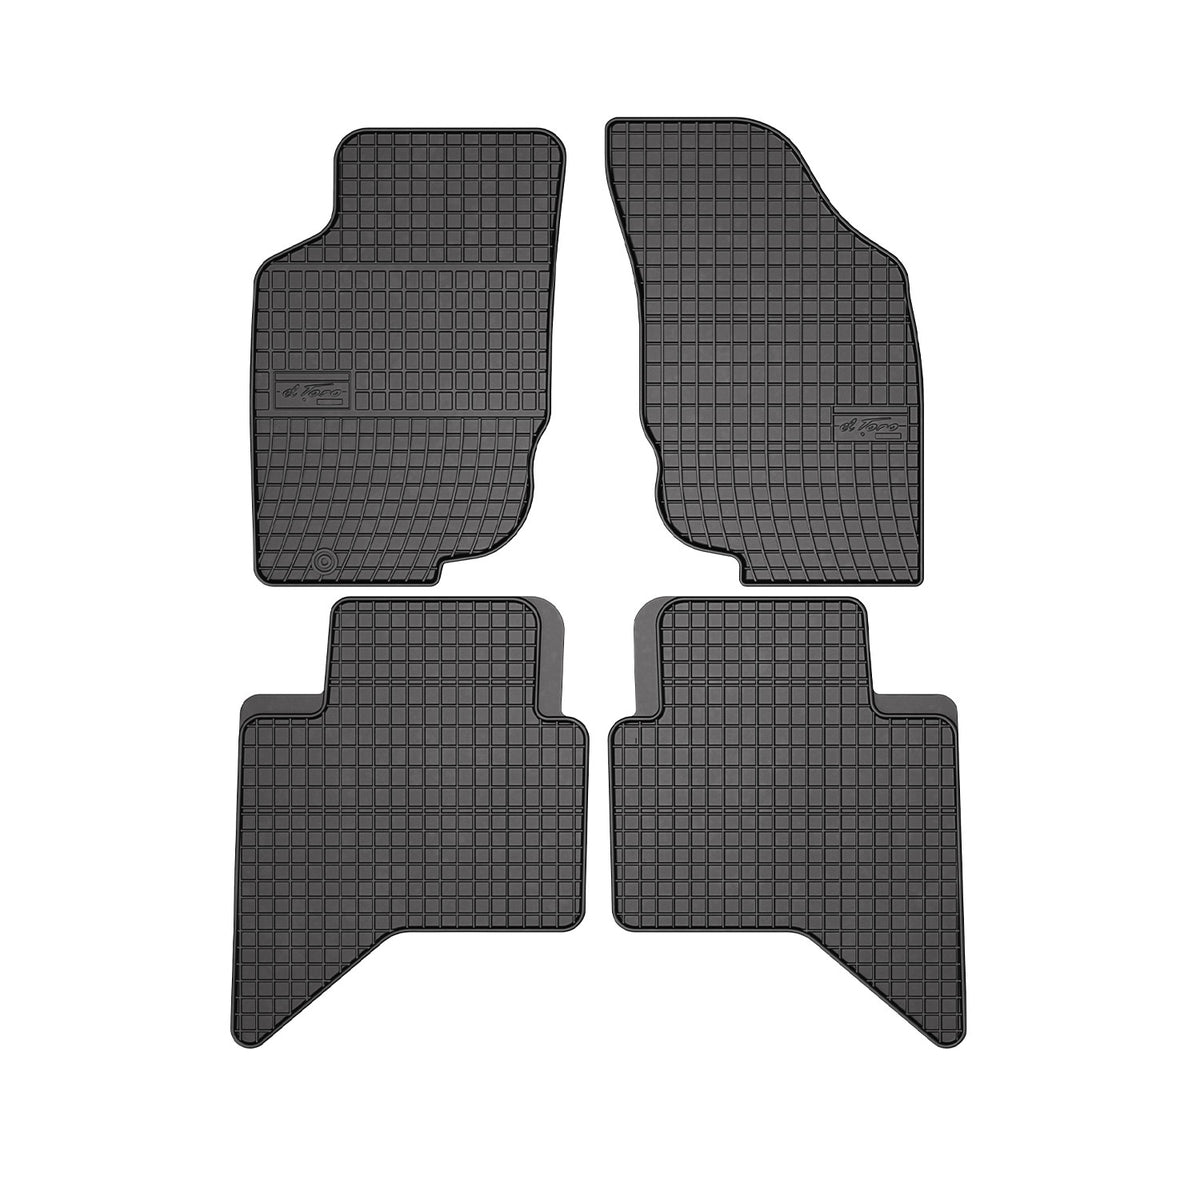 OMAC Gummi Fußmatten für Toyota Hilux 2005-2015 Automatten Gummi Schwarz 4tlg